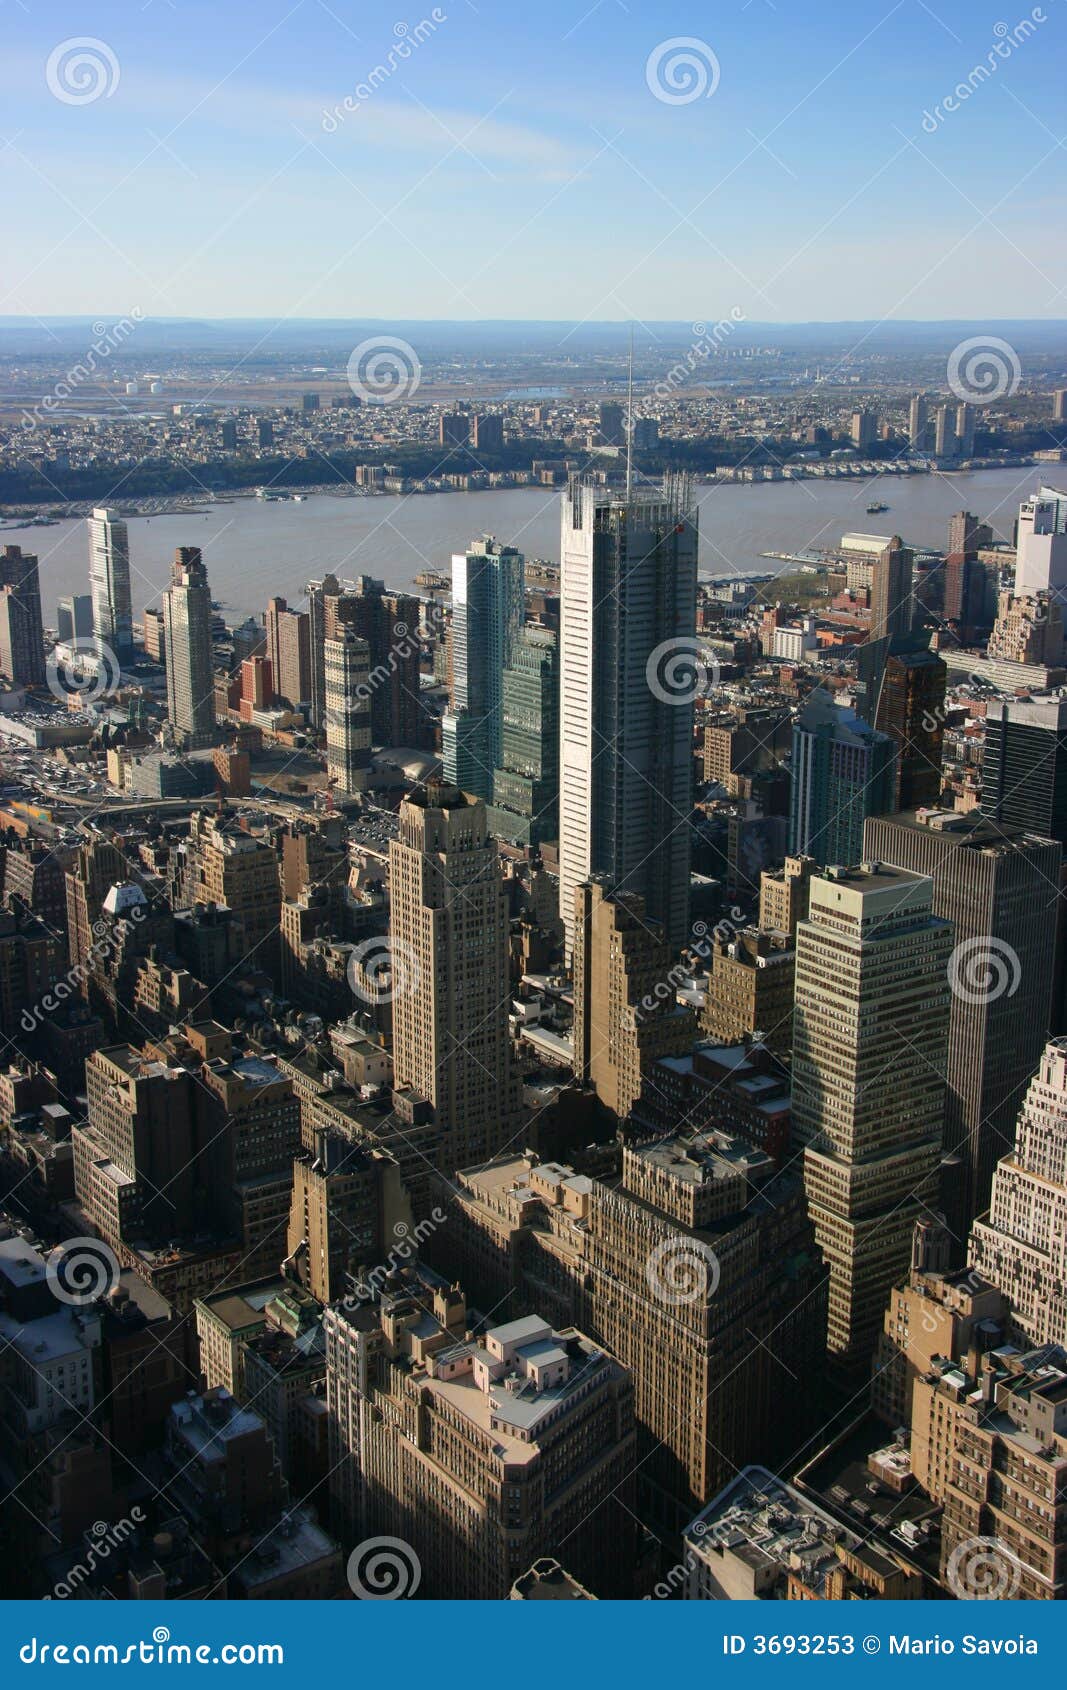 テレビ/映像機器 その他 New York Times Headquarters Seen from Above Stock Image - Image of 